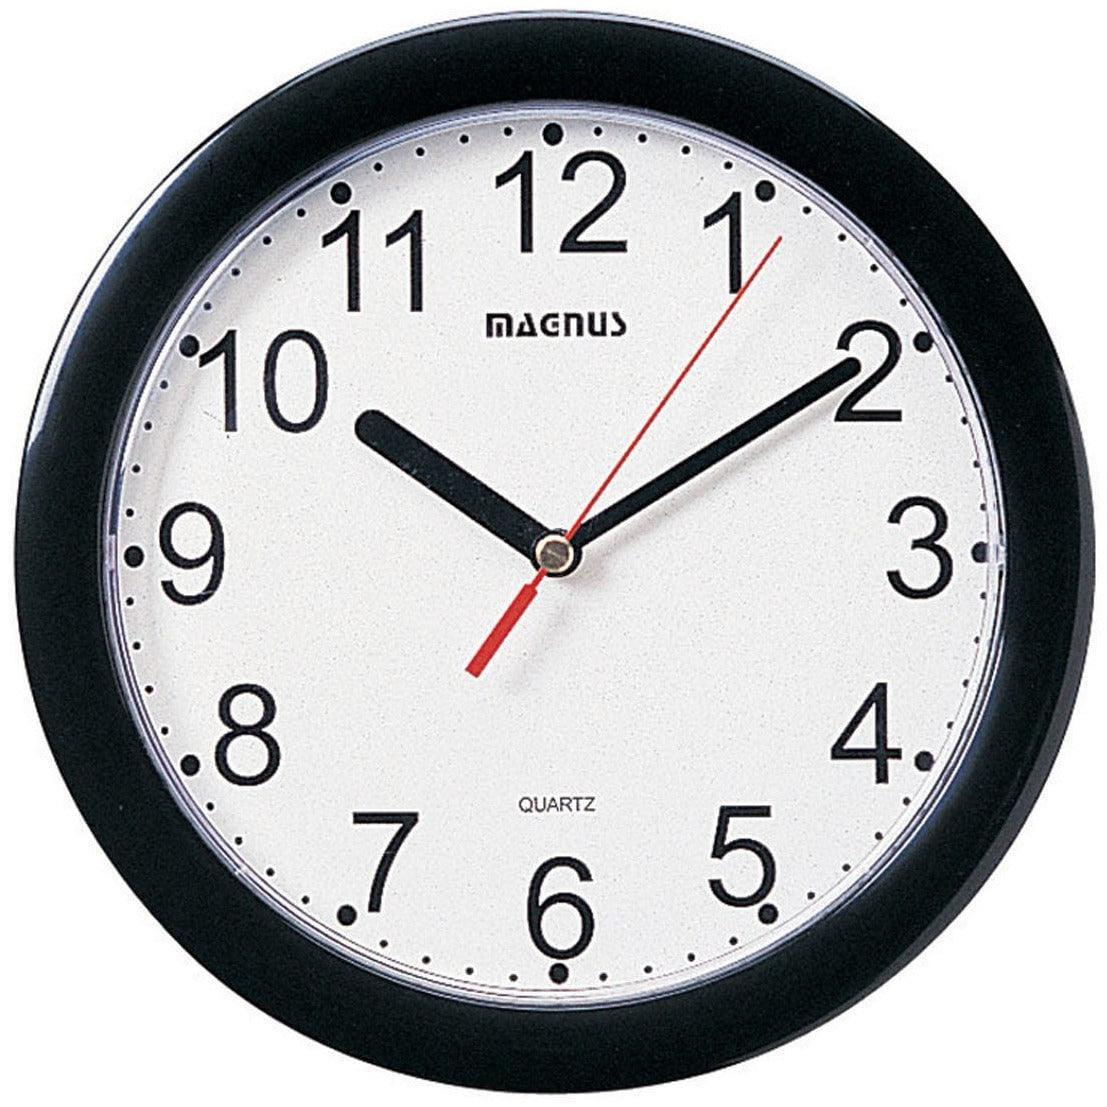 Dainolite - Magnus Wall Clock - 24003-BK | Montreal Lighting & Hardware